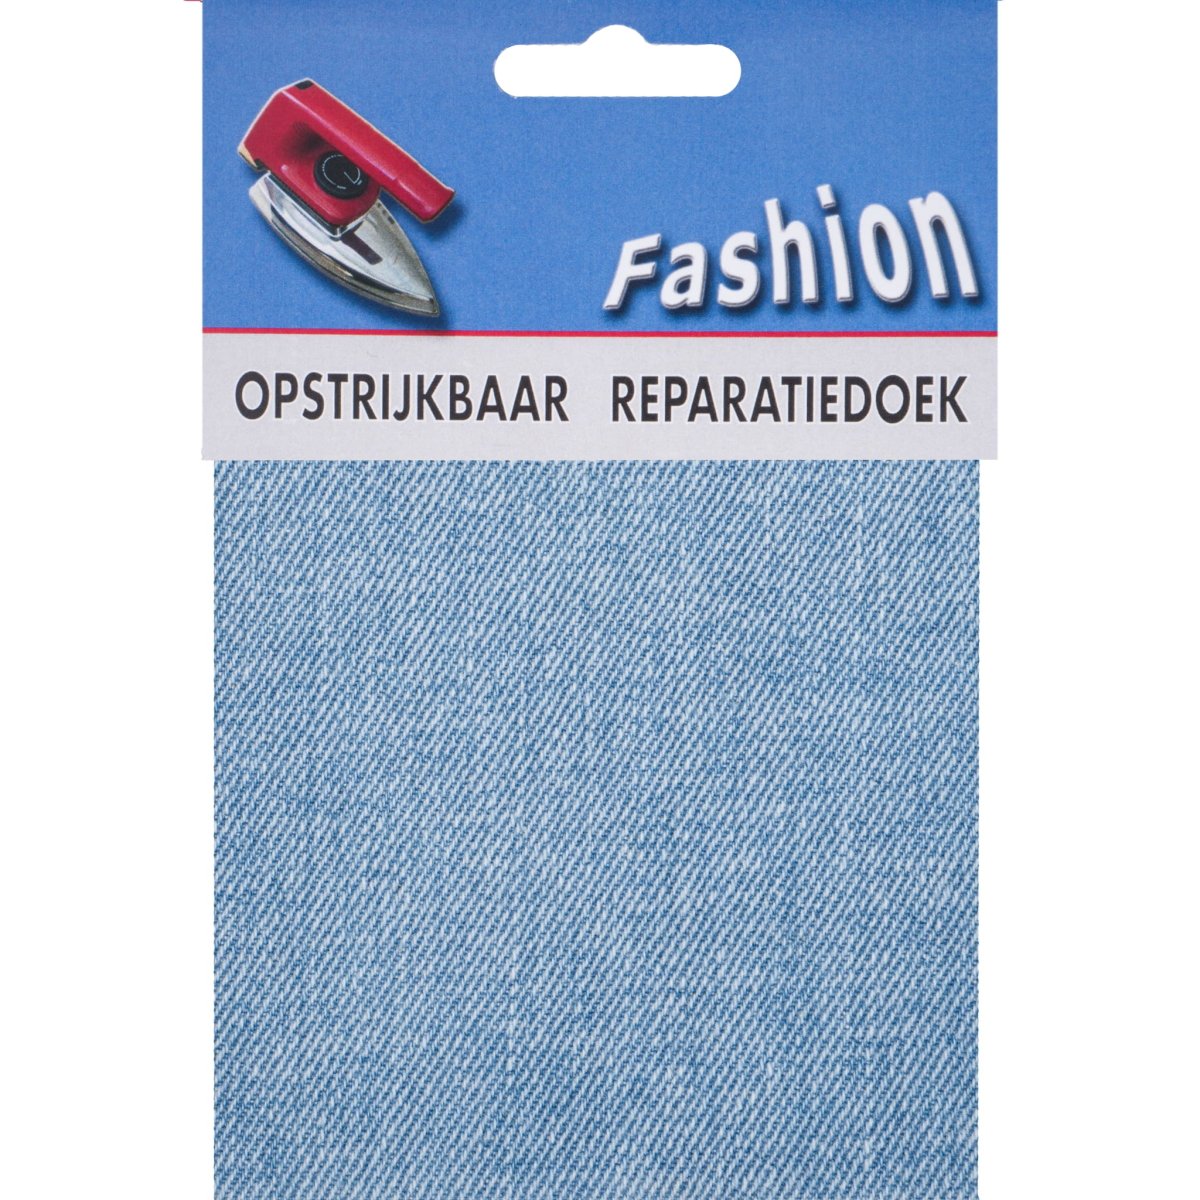 Reparatiedoek Jeans Fashion opstrijkbaar stevig 10x40cm Repraratiedoek RPD117401 - Fourniturenkraam.nl